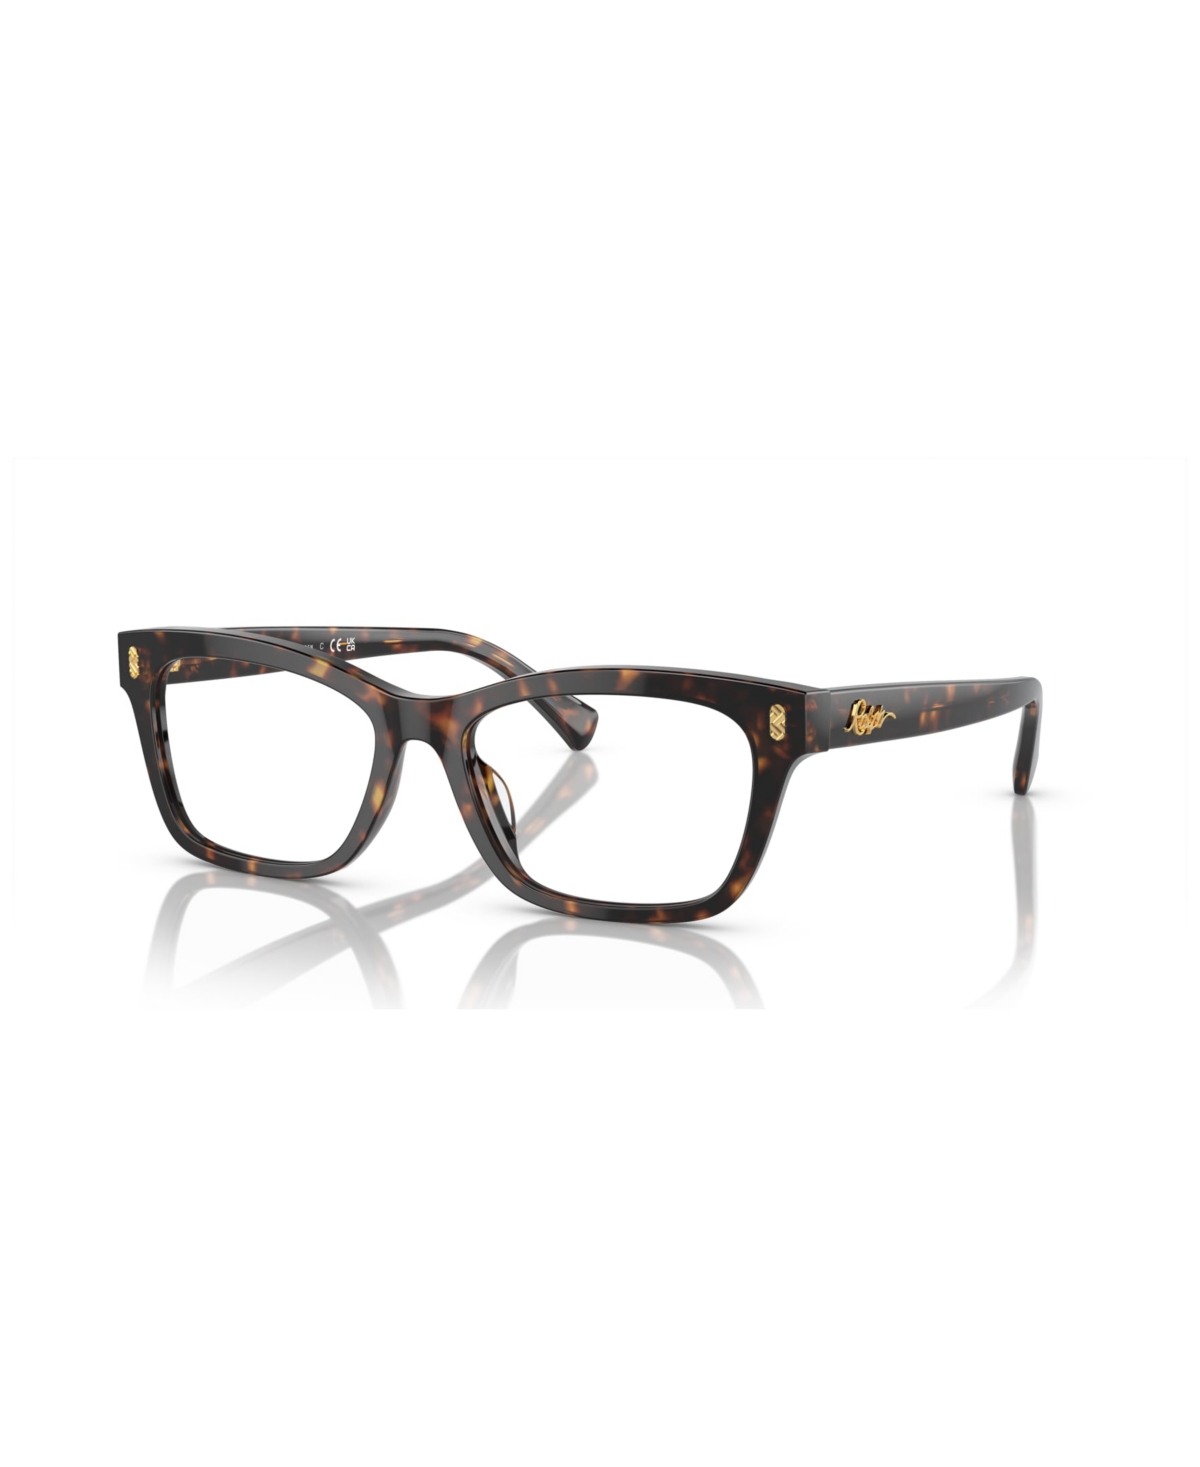 Women's Eyeglasses, RA7154U - Shiny Dark Havana